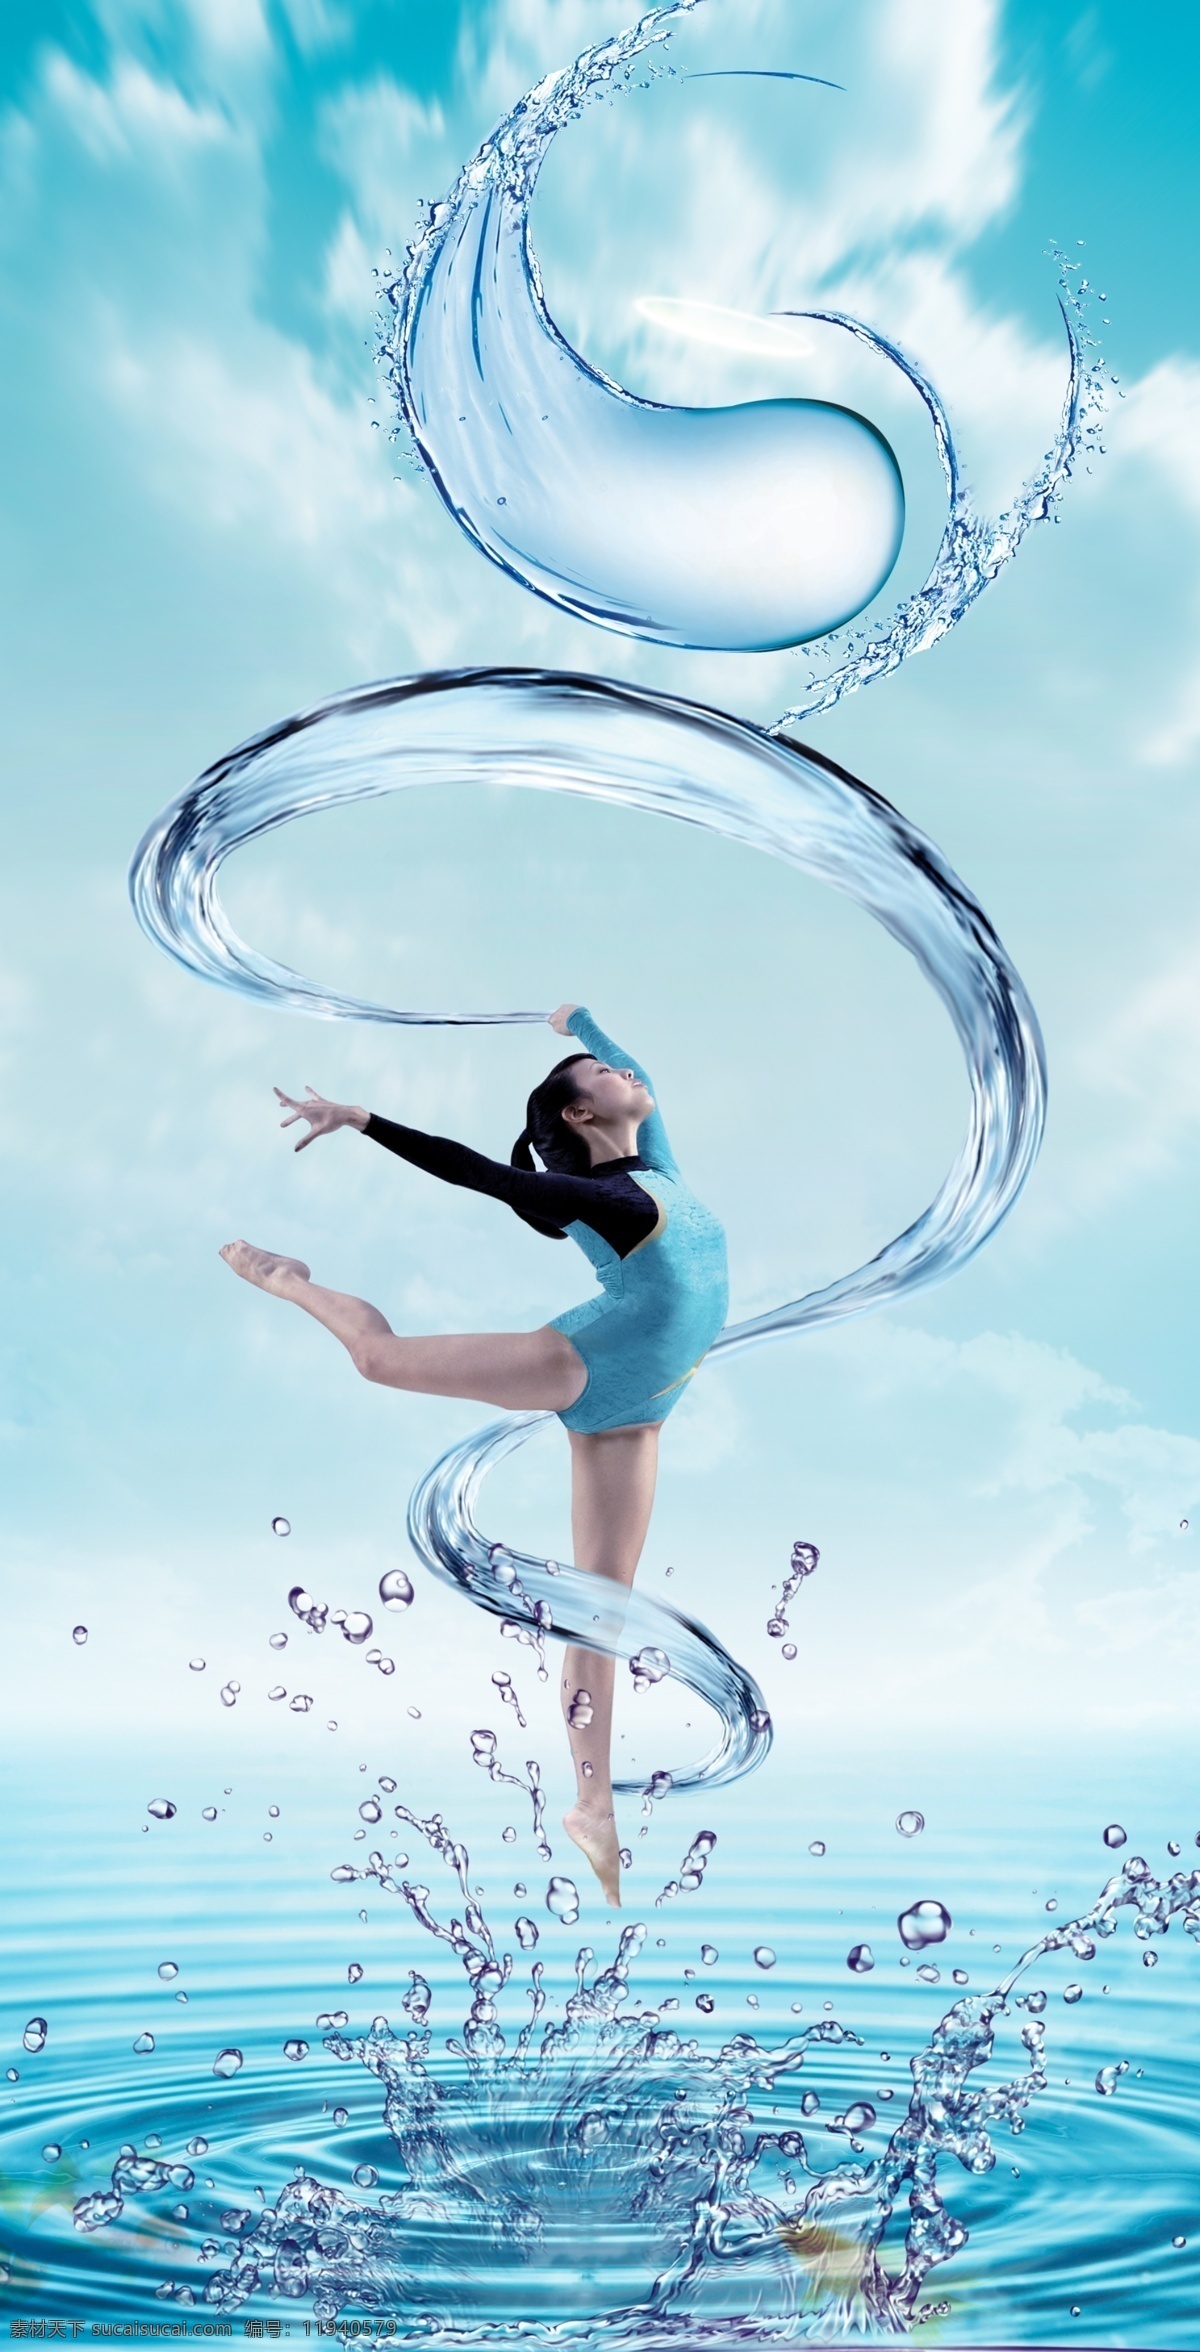 海平面 上 跳舞 舞者 女人似水 水波 水纹 溅起的水珠 白云 美女 女人 舞女 舞蹈 水上跳舞 化妆品广告 广告类